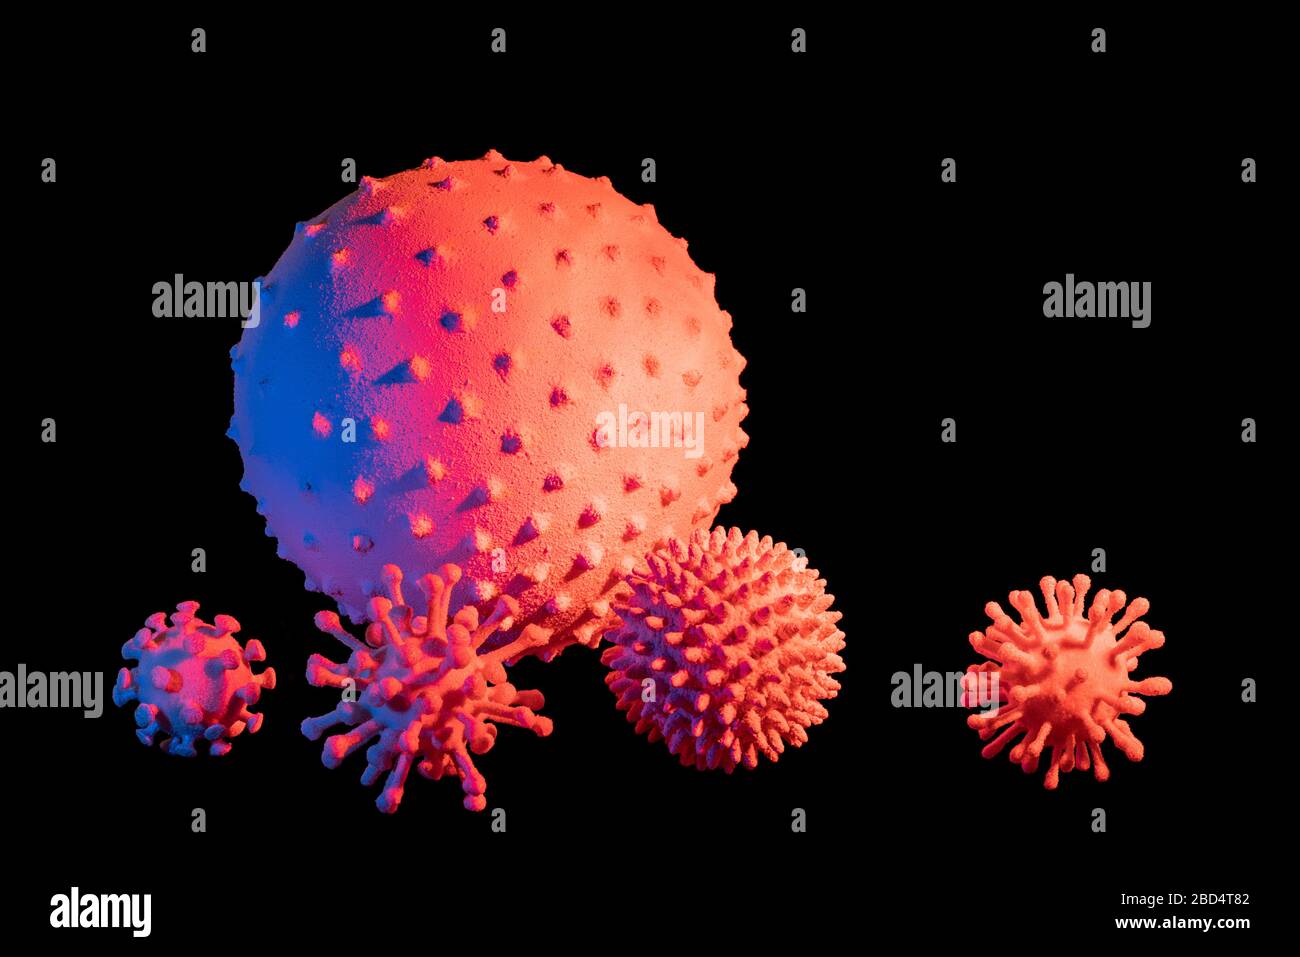 immagine di alcuni colorati virus simbolici illuminati in nero sul retro Foto Stock